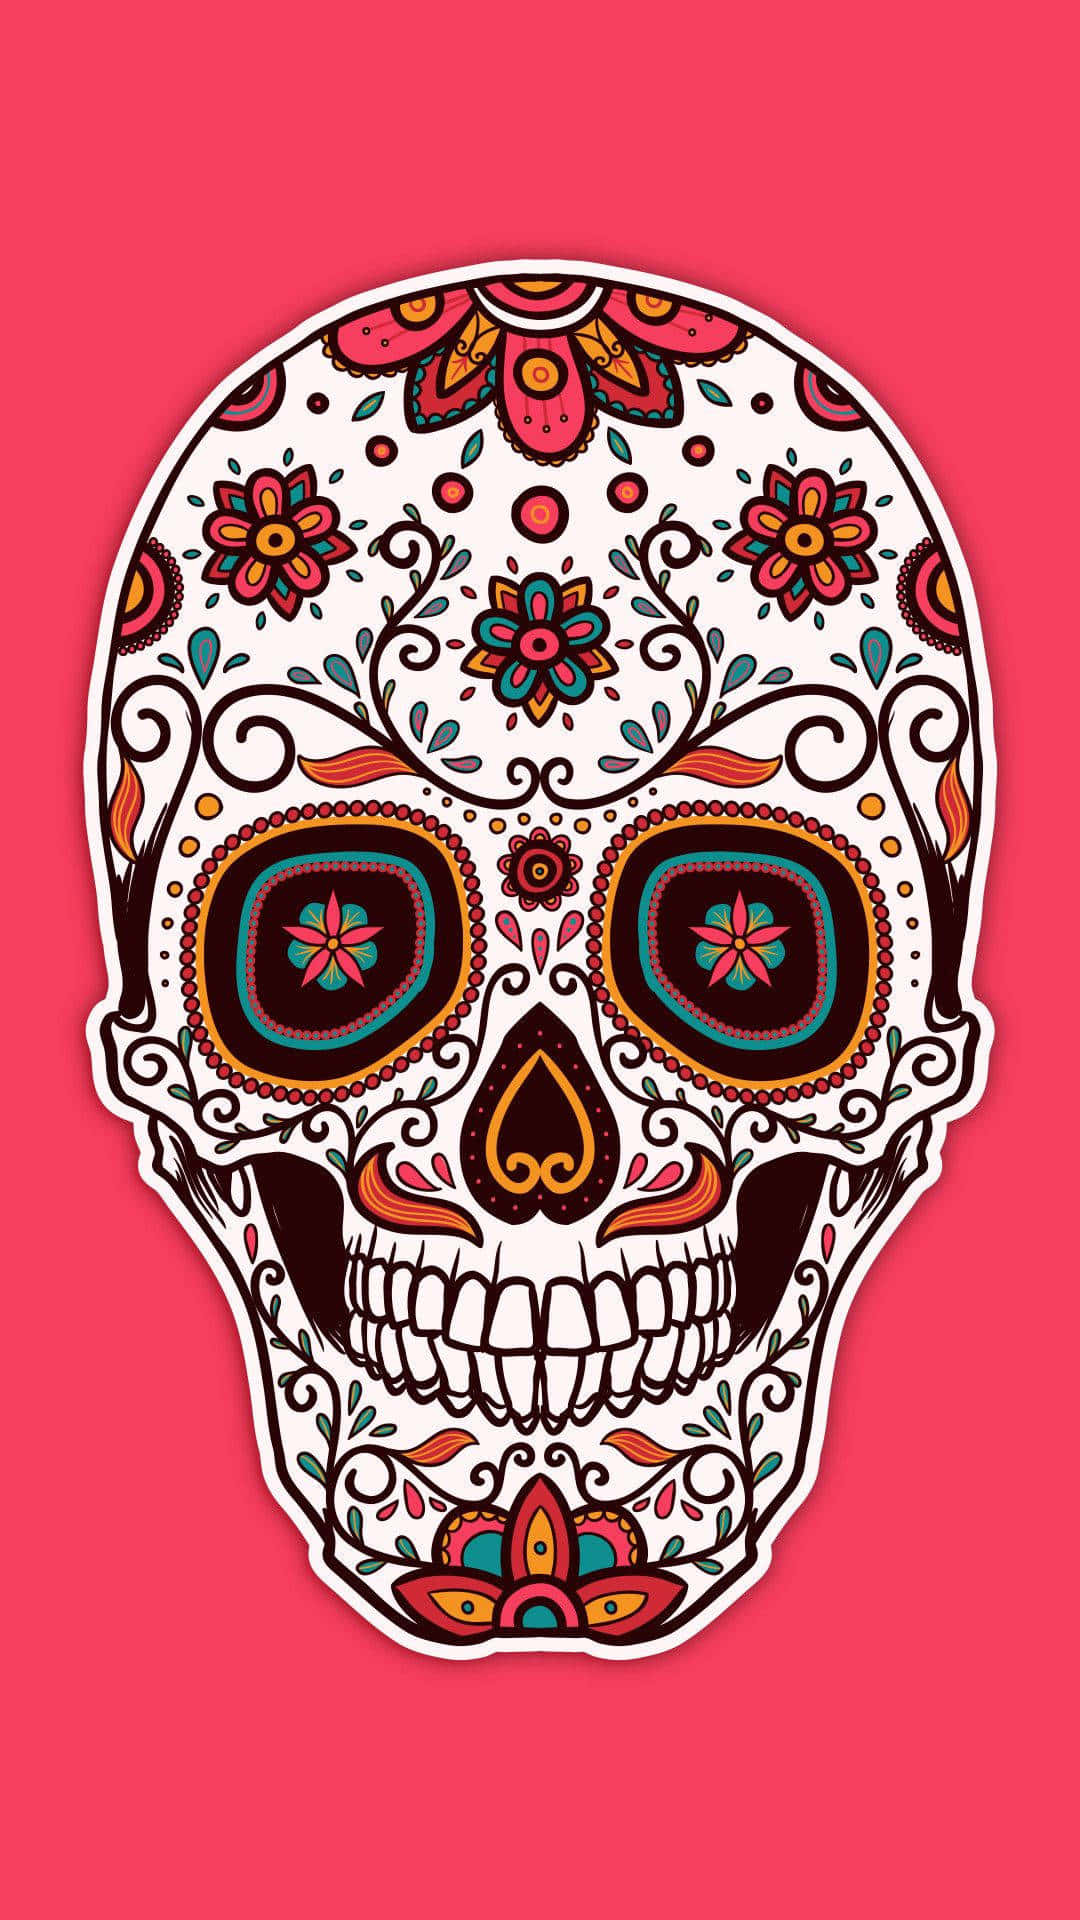 Gebensie Ihrem Alltag Mit Einem Sugar-skull-handy Eine Einzigartige Farbtupfer Wallpaper